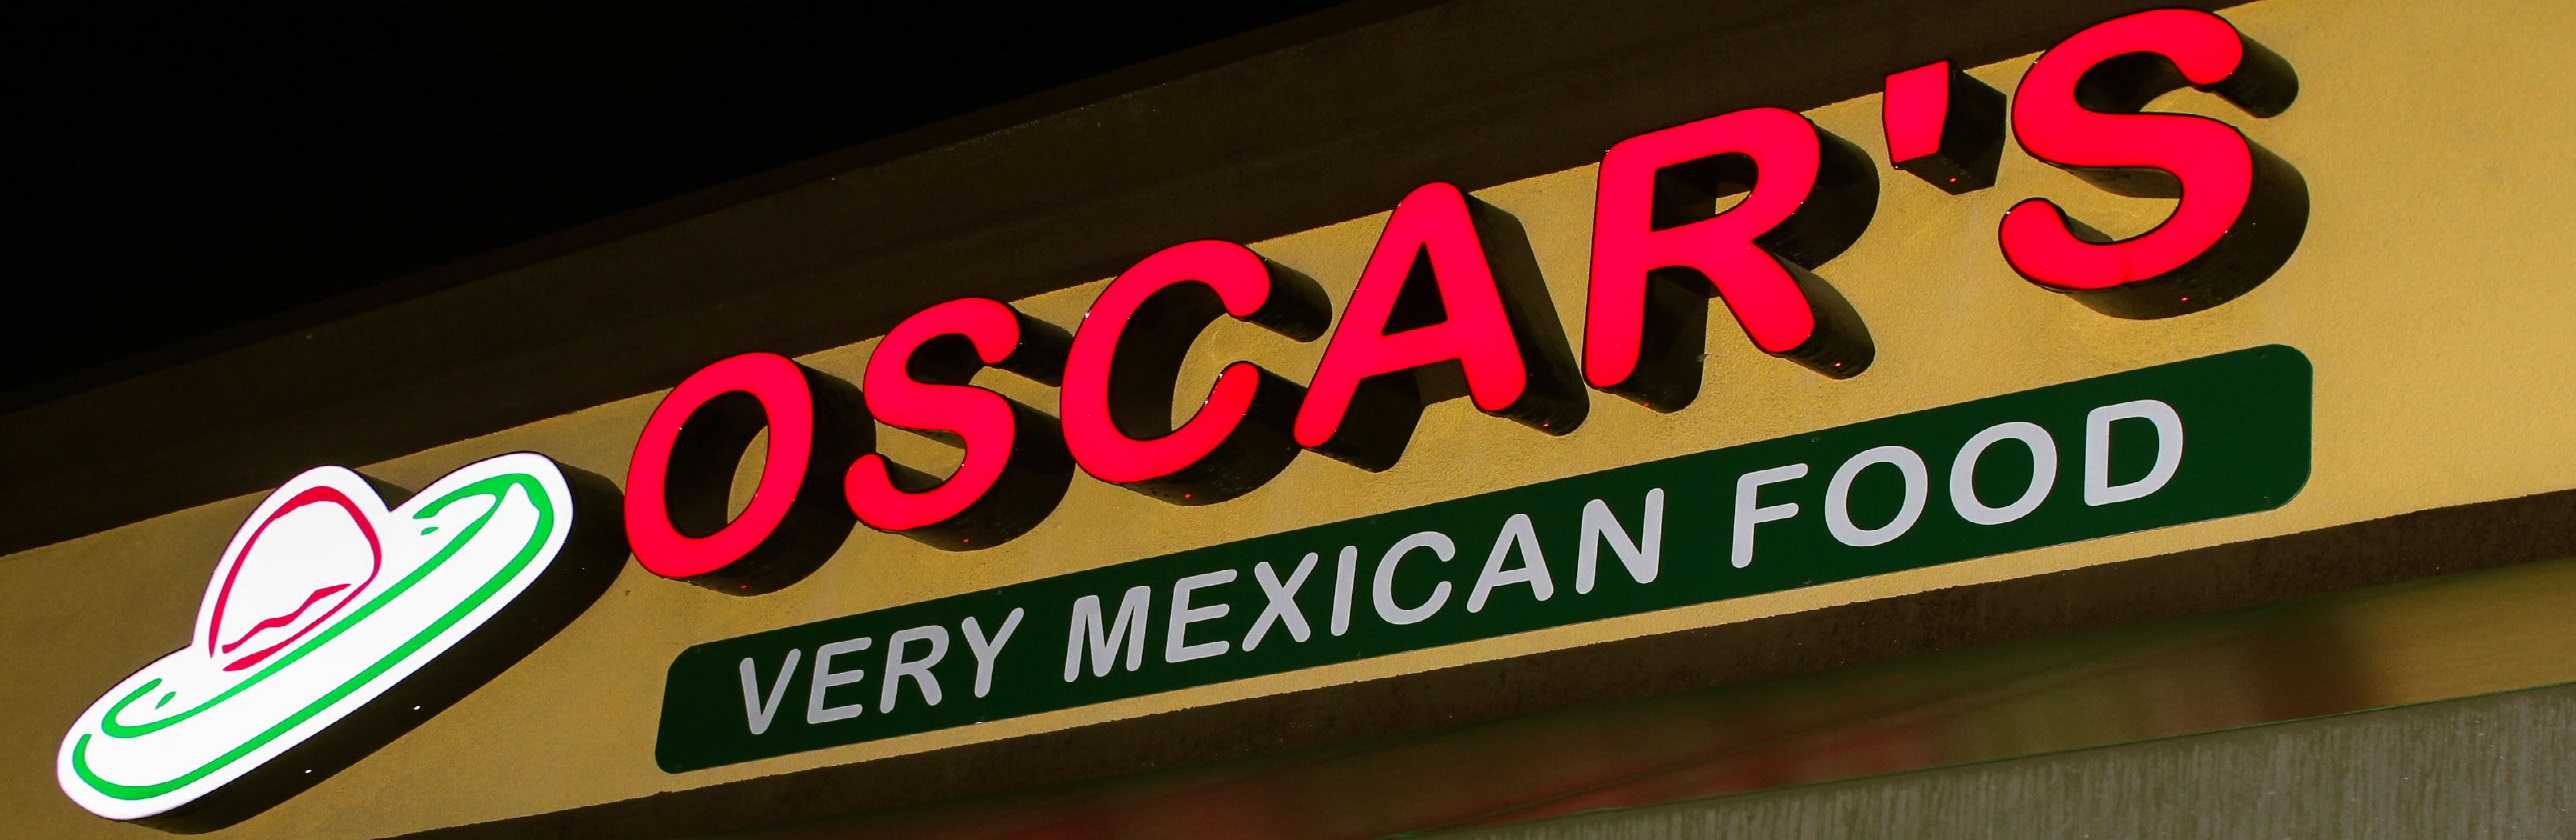 Oscar's Very Mexican Food